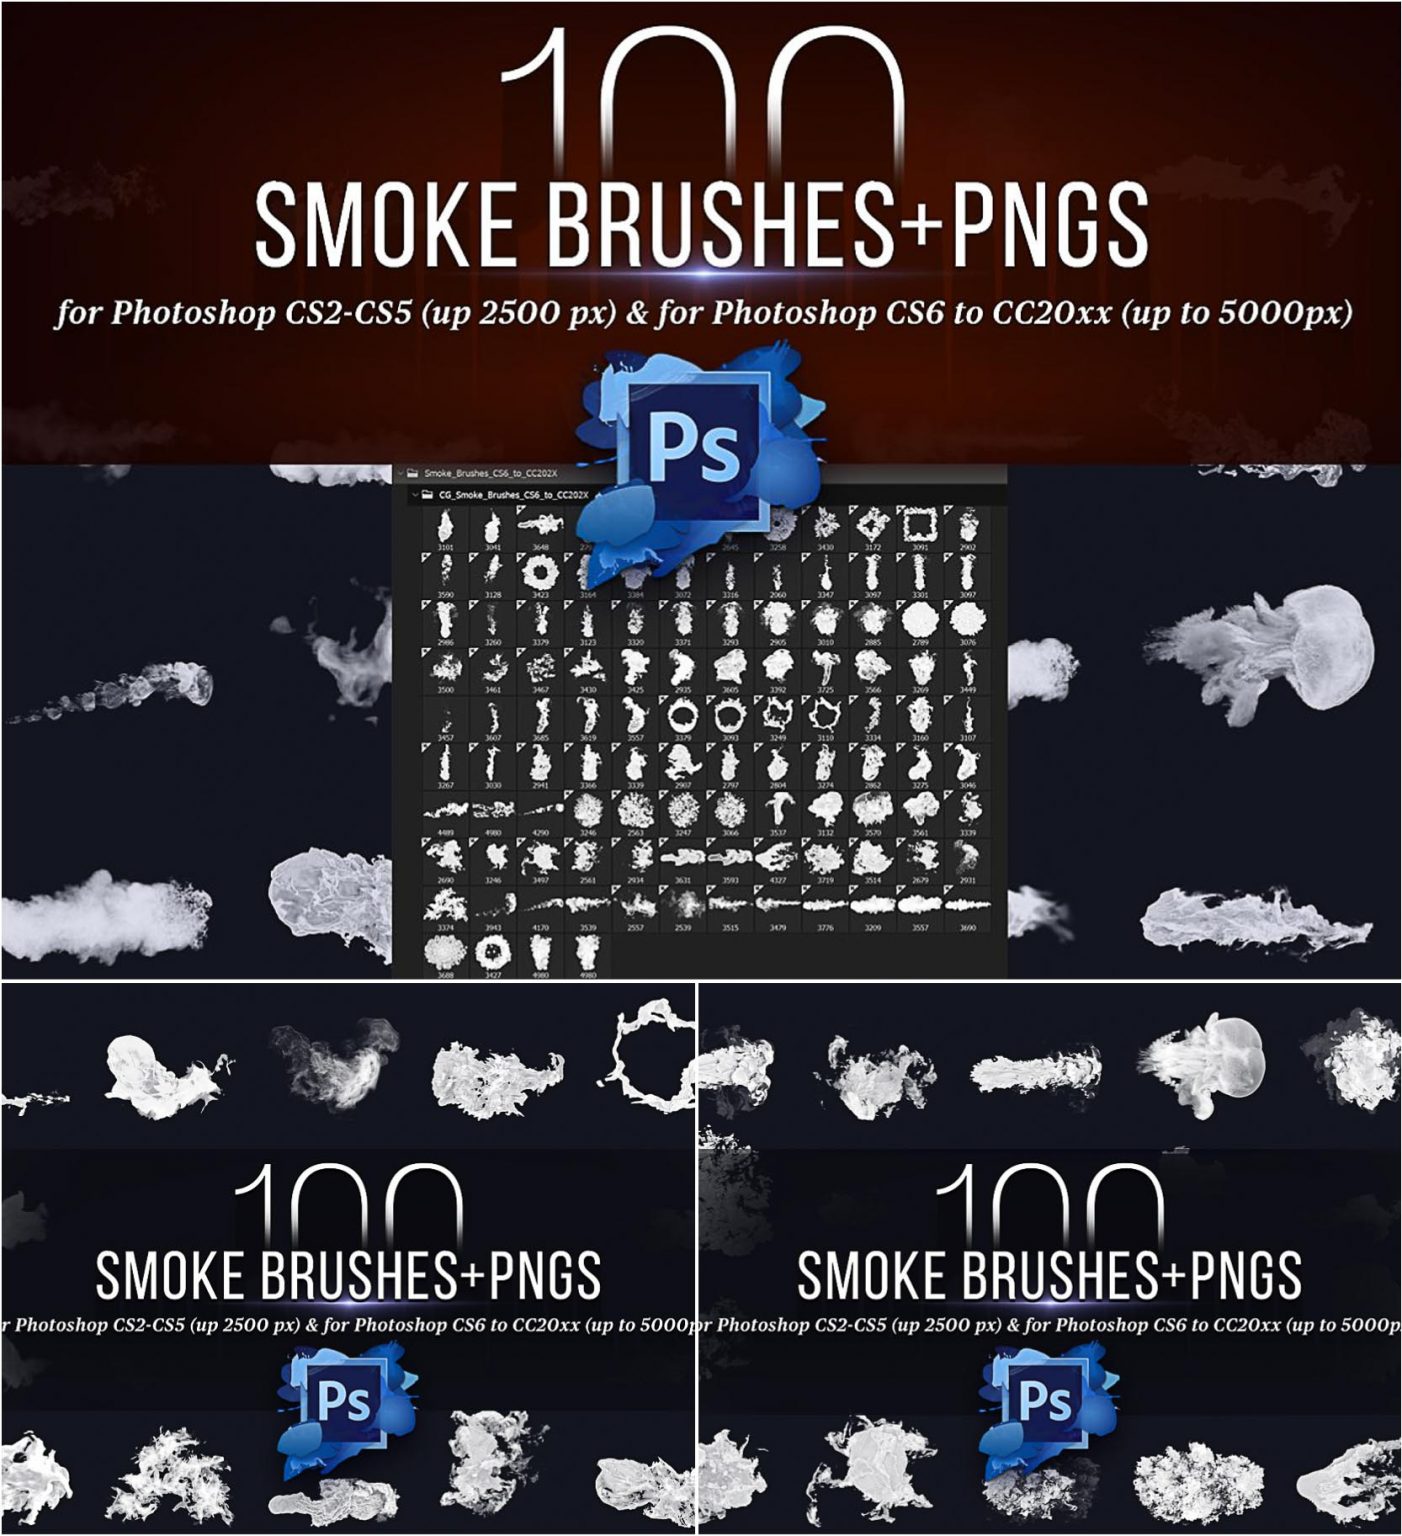 adobe photoshop cs6 smoke brushes pack free download